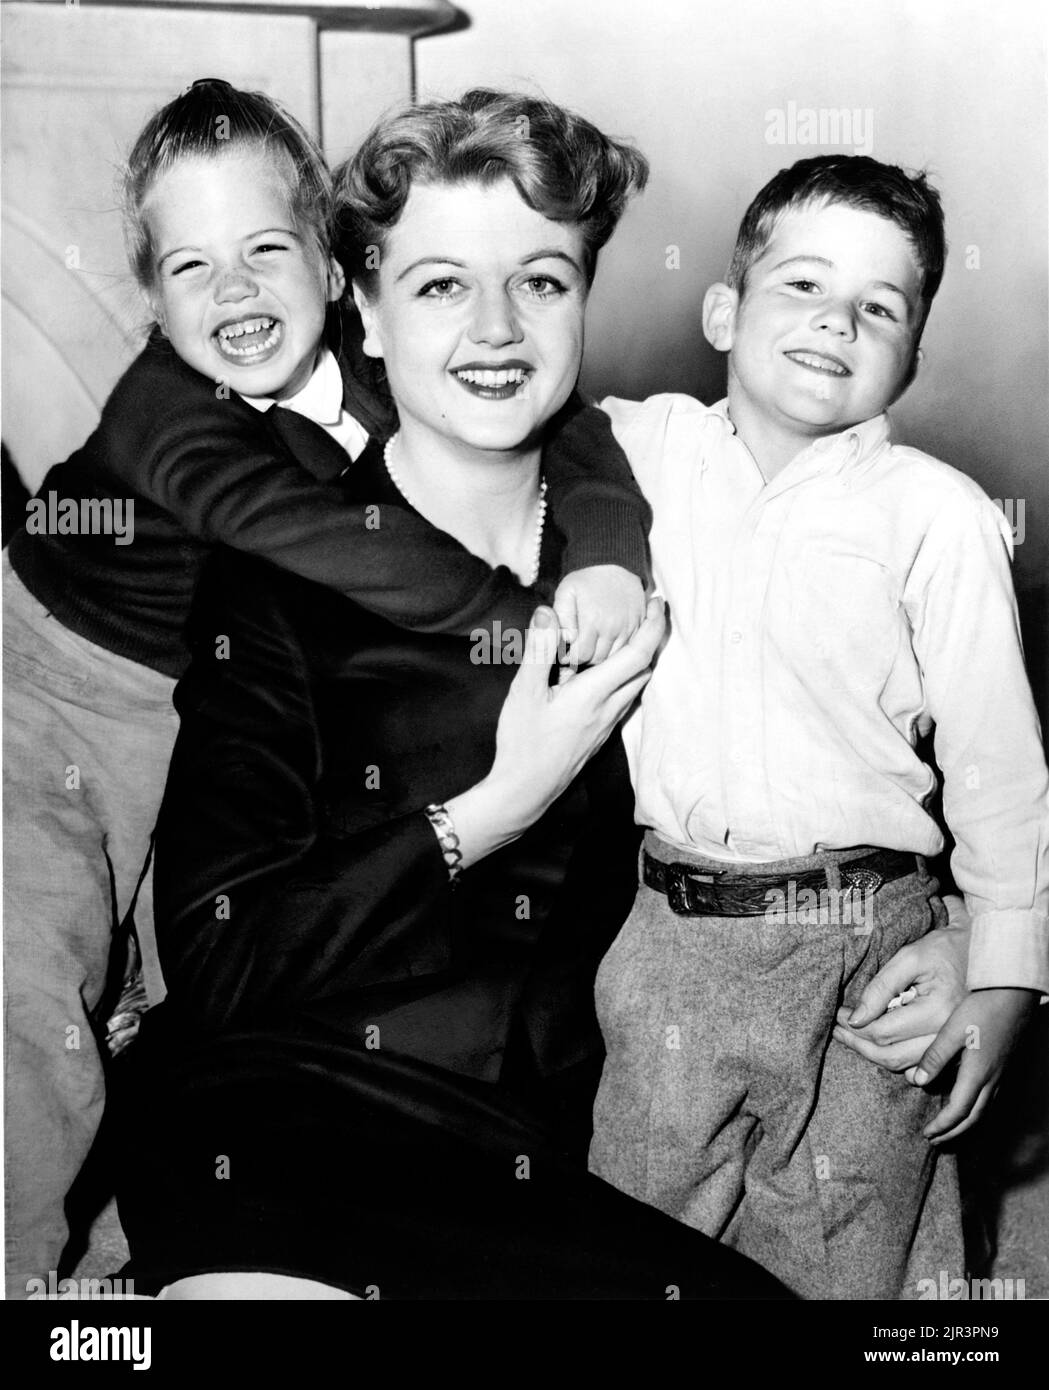 1957 c. , ÉTATS-UNIS : La célèbre actrice britannique Dame ANGELA LANSBURY ( née le 16 octobre 1925 ) avec son fils Anthony Pullen Shaw ( né en 1952 , réalisateur et acteur ) et sa fille Deirdre Angela Shaw , née du mariage avec l'acteur Peter Shaw ( 1918 - 2003 ) . Photographe inconnu .- HISTOIRE - FOTO STORICHE - PORTRAIT - RITRATTO - ATTORE - ATTRICE - FILM - CINÉMA - REGISTA - FRATELLI - FRÈRES - FIGLI - FILS - fratello e sorella - figlio e figlia - Mamnma - mère - personalità da giovane - da bambia bambino Bambini - personnalité personnalités quand était jeune - ENFANCE - DEDANS Banque D'Images